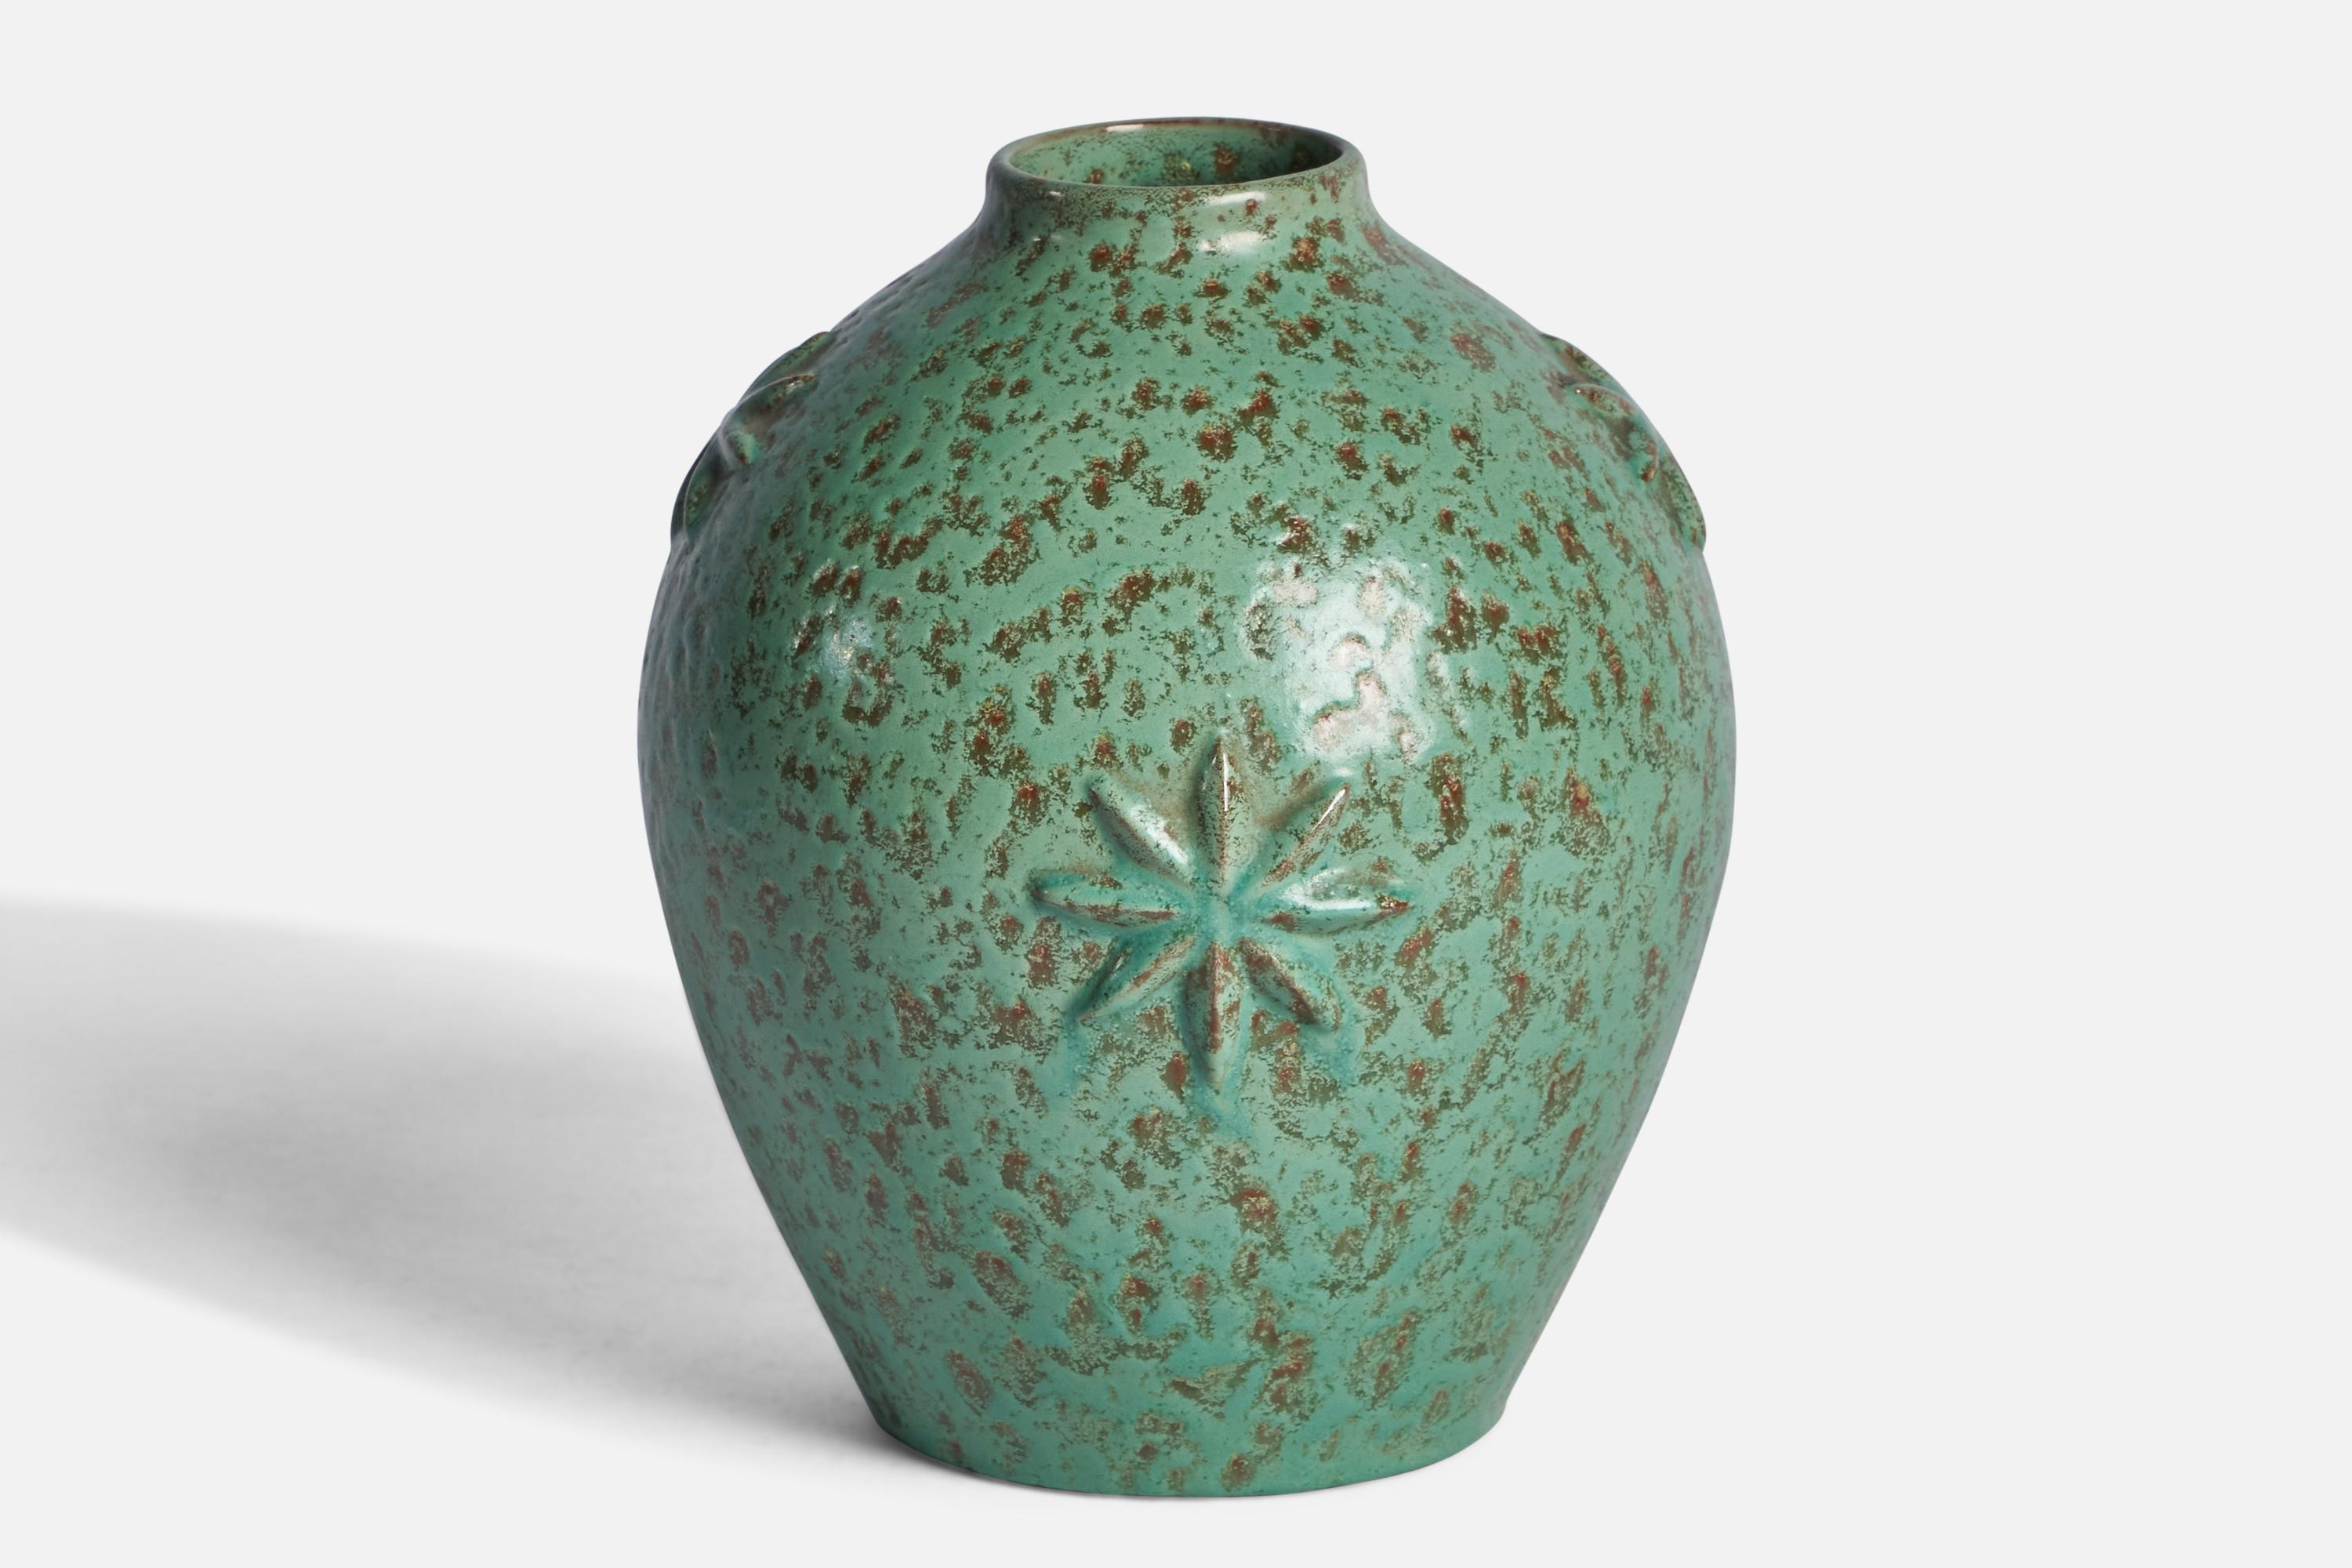 A green-glazed earthenware vase designed by Jerk Werkmäster and produced by Nittsjö, Sweden, 1930s.